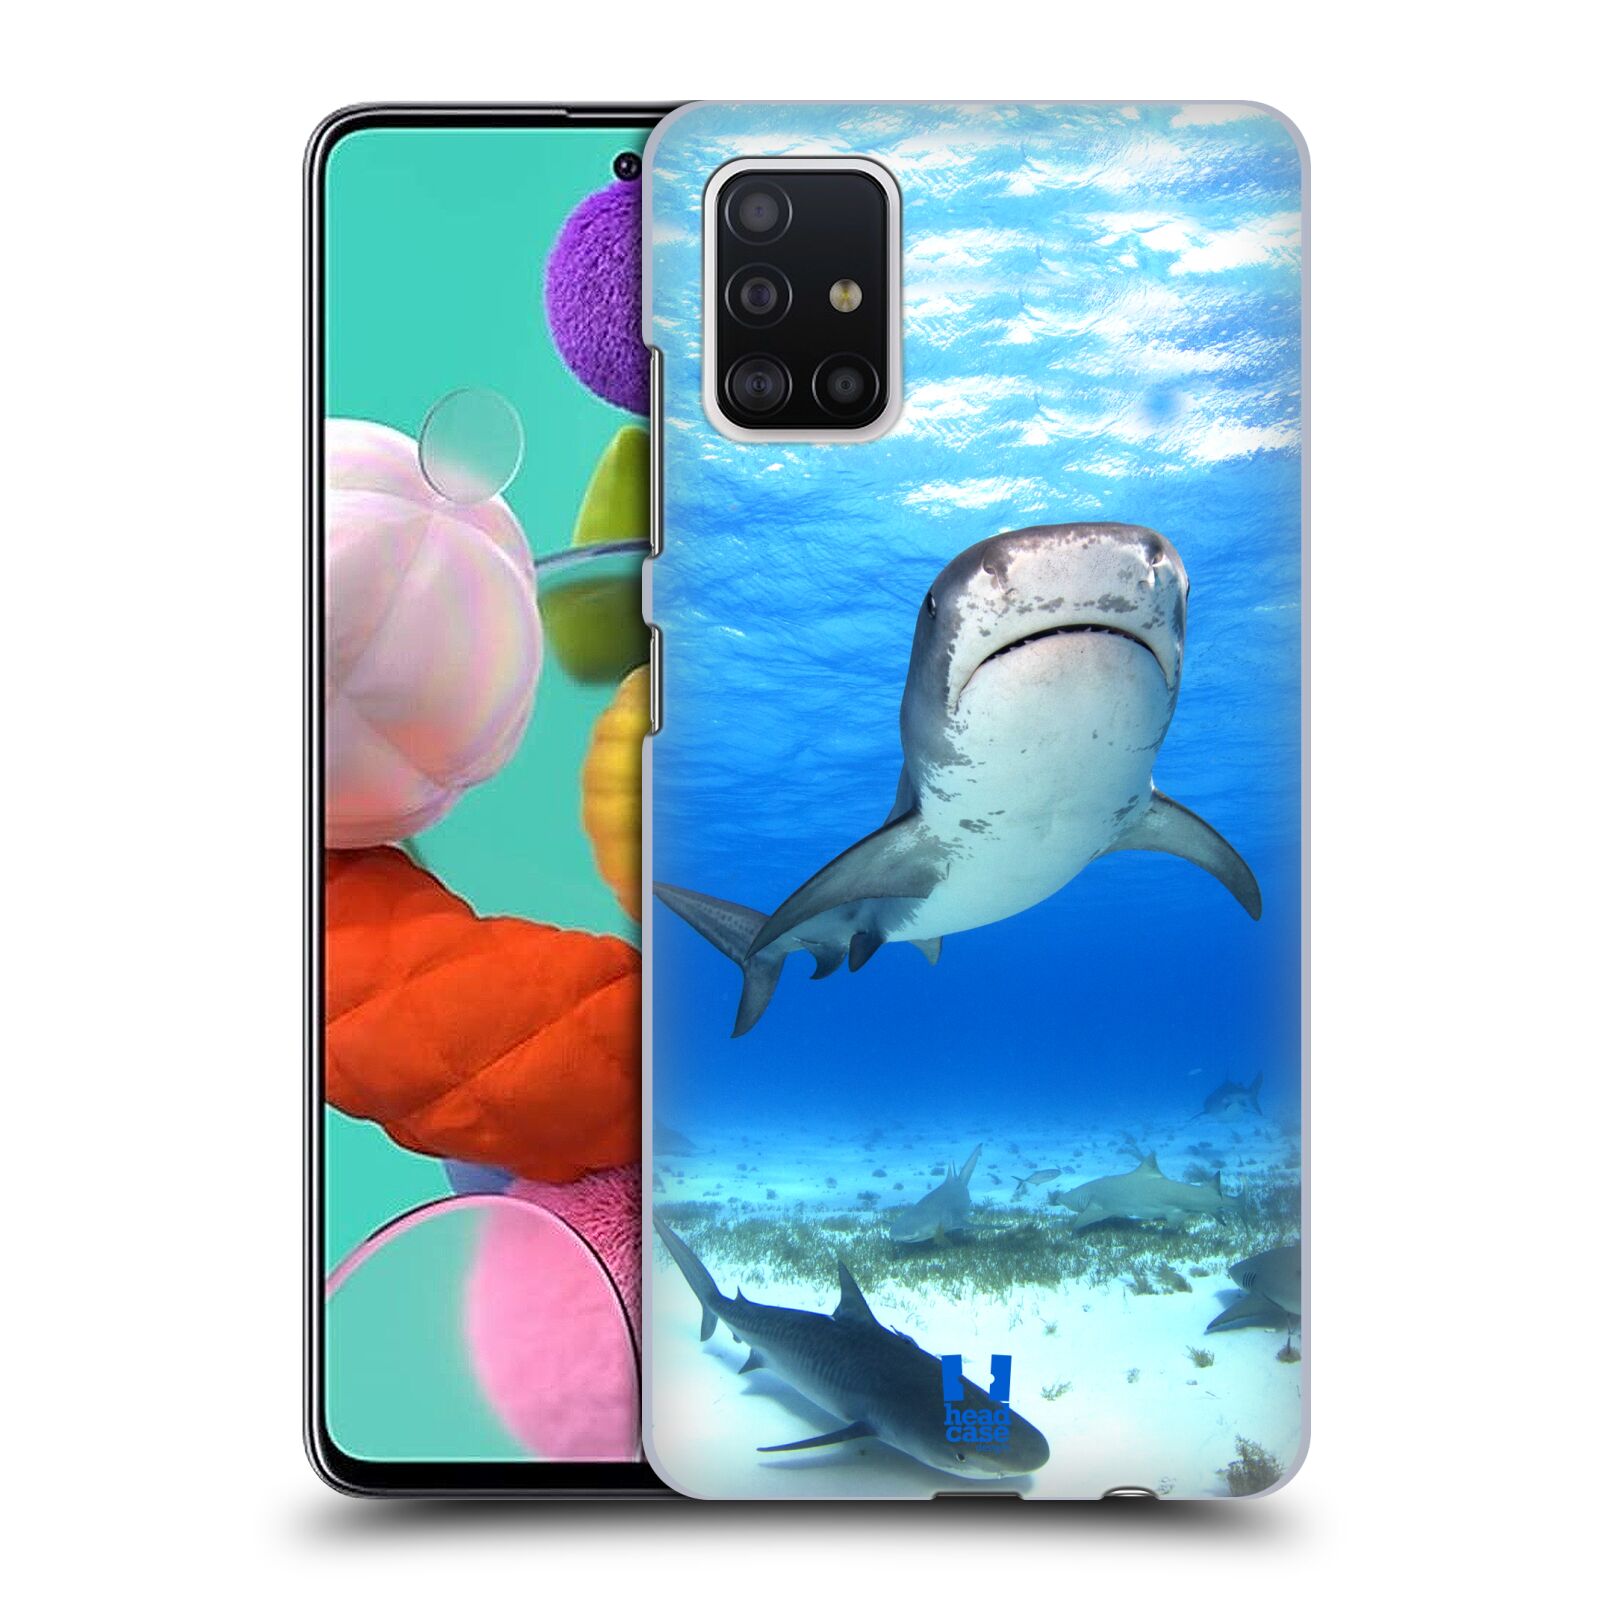 Pouzdro na mobil Samsung Galaxy A51 - HEAD CASE - vzor slavná zvířata foto žralok tygří